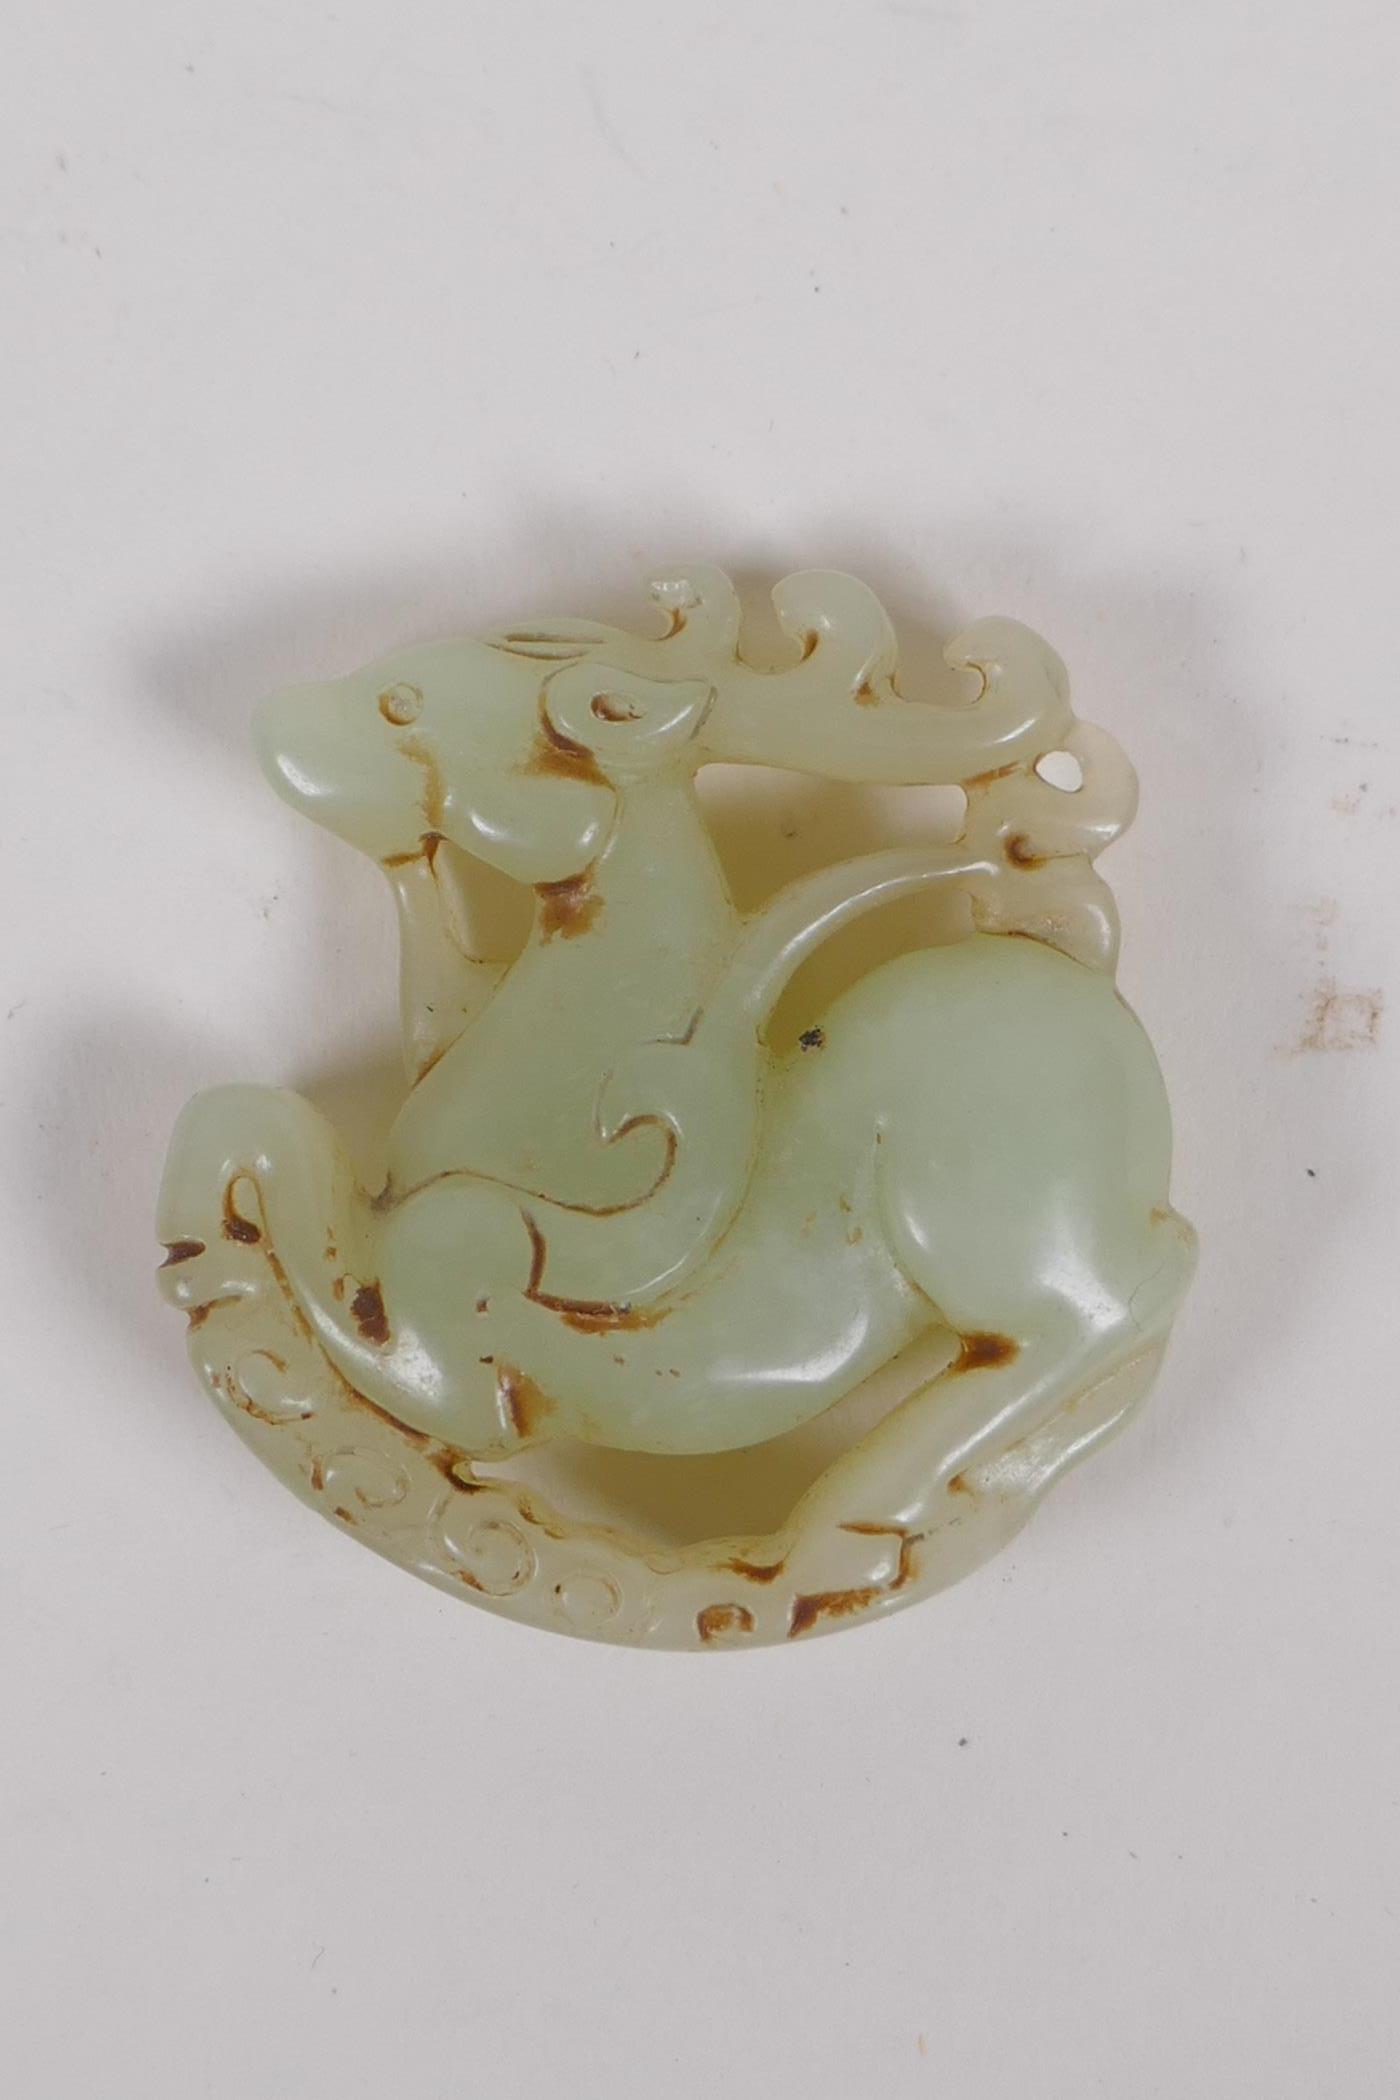 A Chinese carved celadon jade deer pendant, 5cm diameter